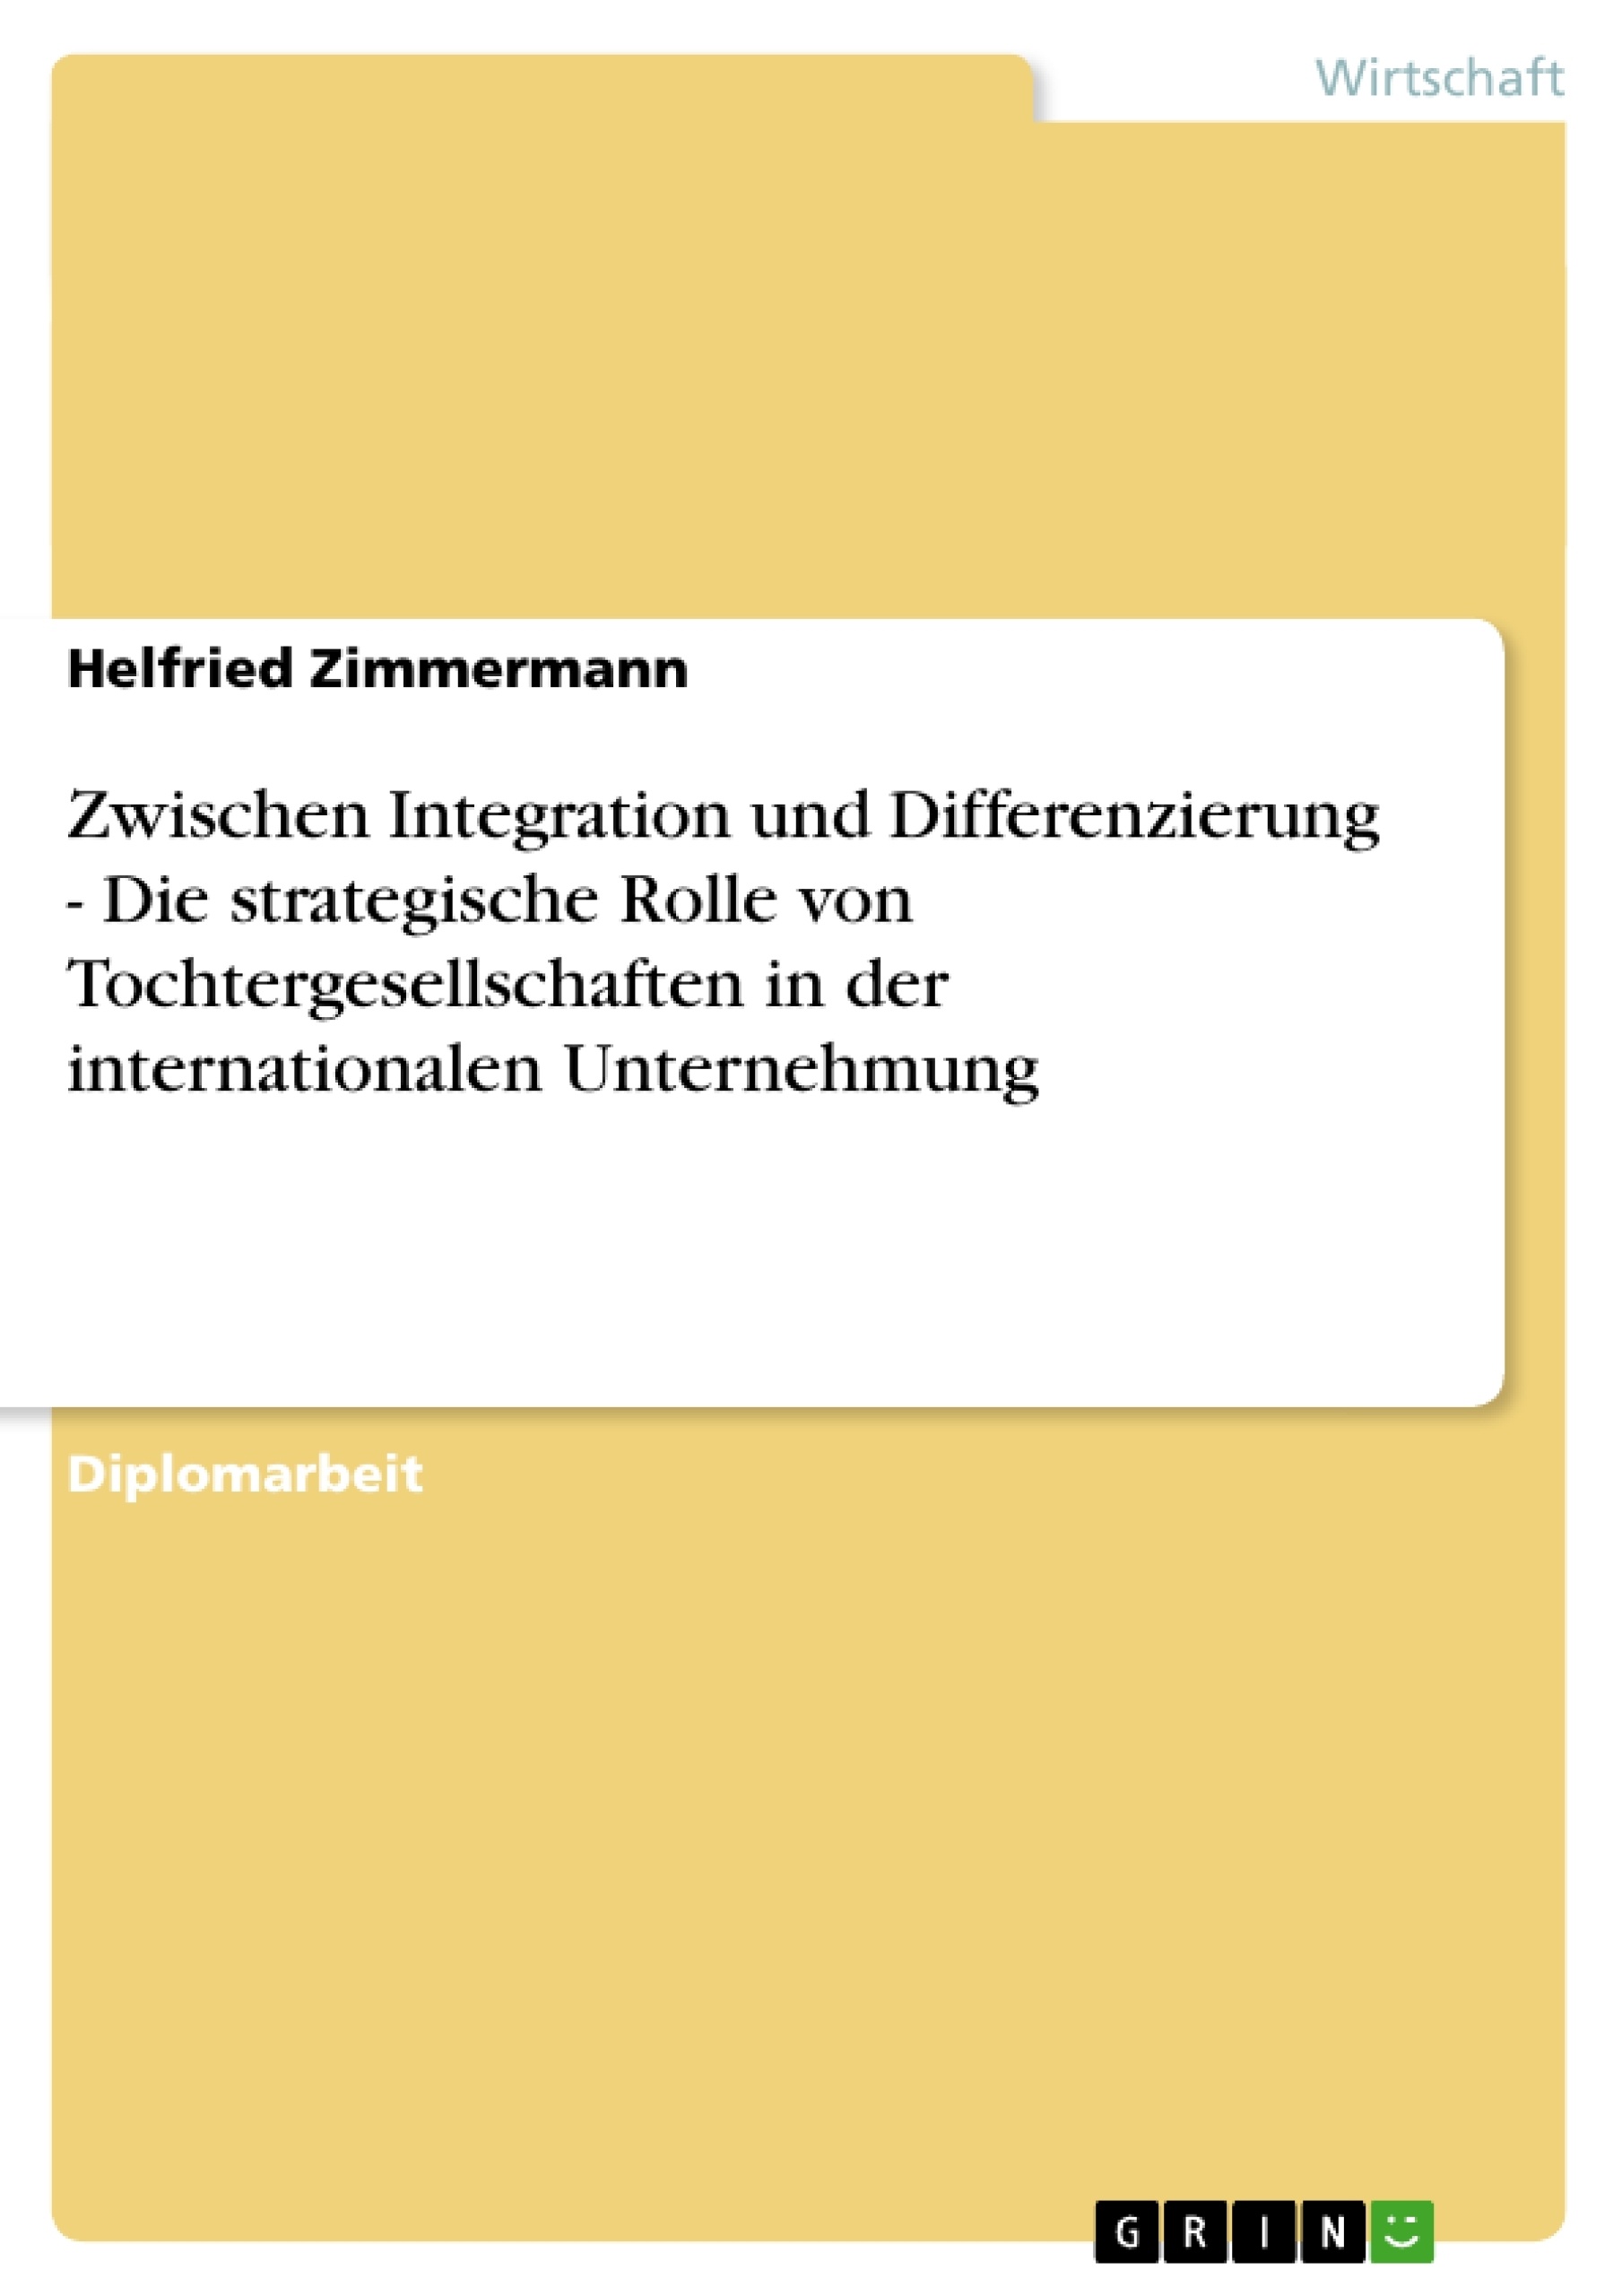 Título: Zwischen Integration und Differenzierung - Die strategische Rolle von Tochtergesellschaften in der internationalen Unternehmung